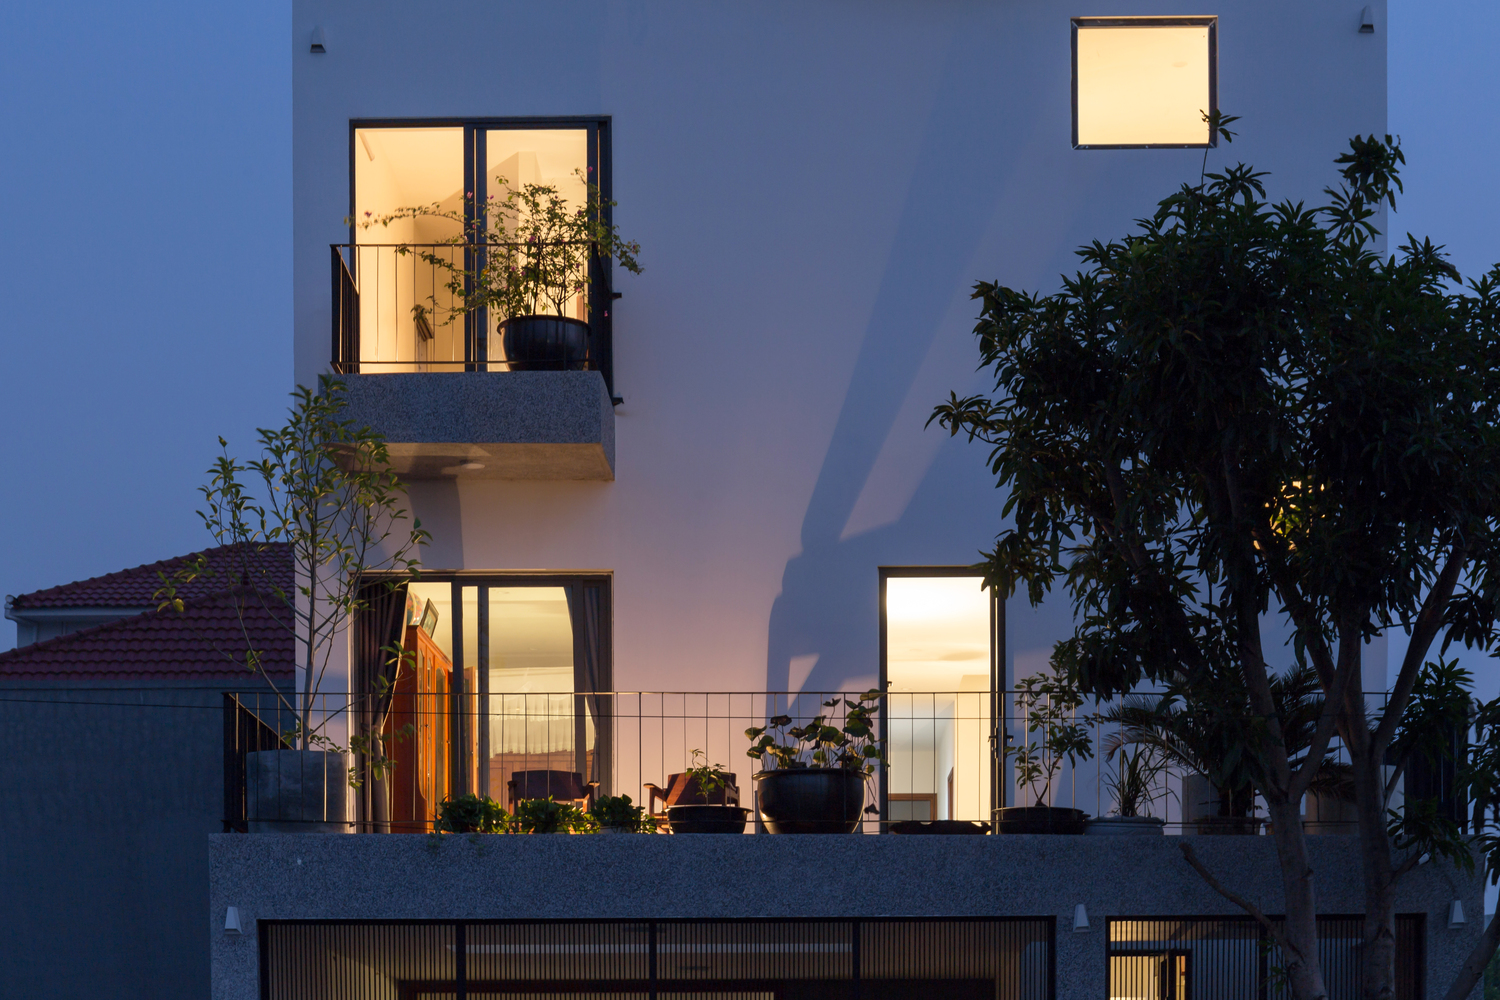 Hình ảnh cận cảnh mặt tiền các tầng trên của nhà phố khi đêm xuống với cửa sổ kính trong suốt, cây xanh trồng ở ban công